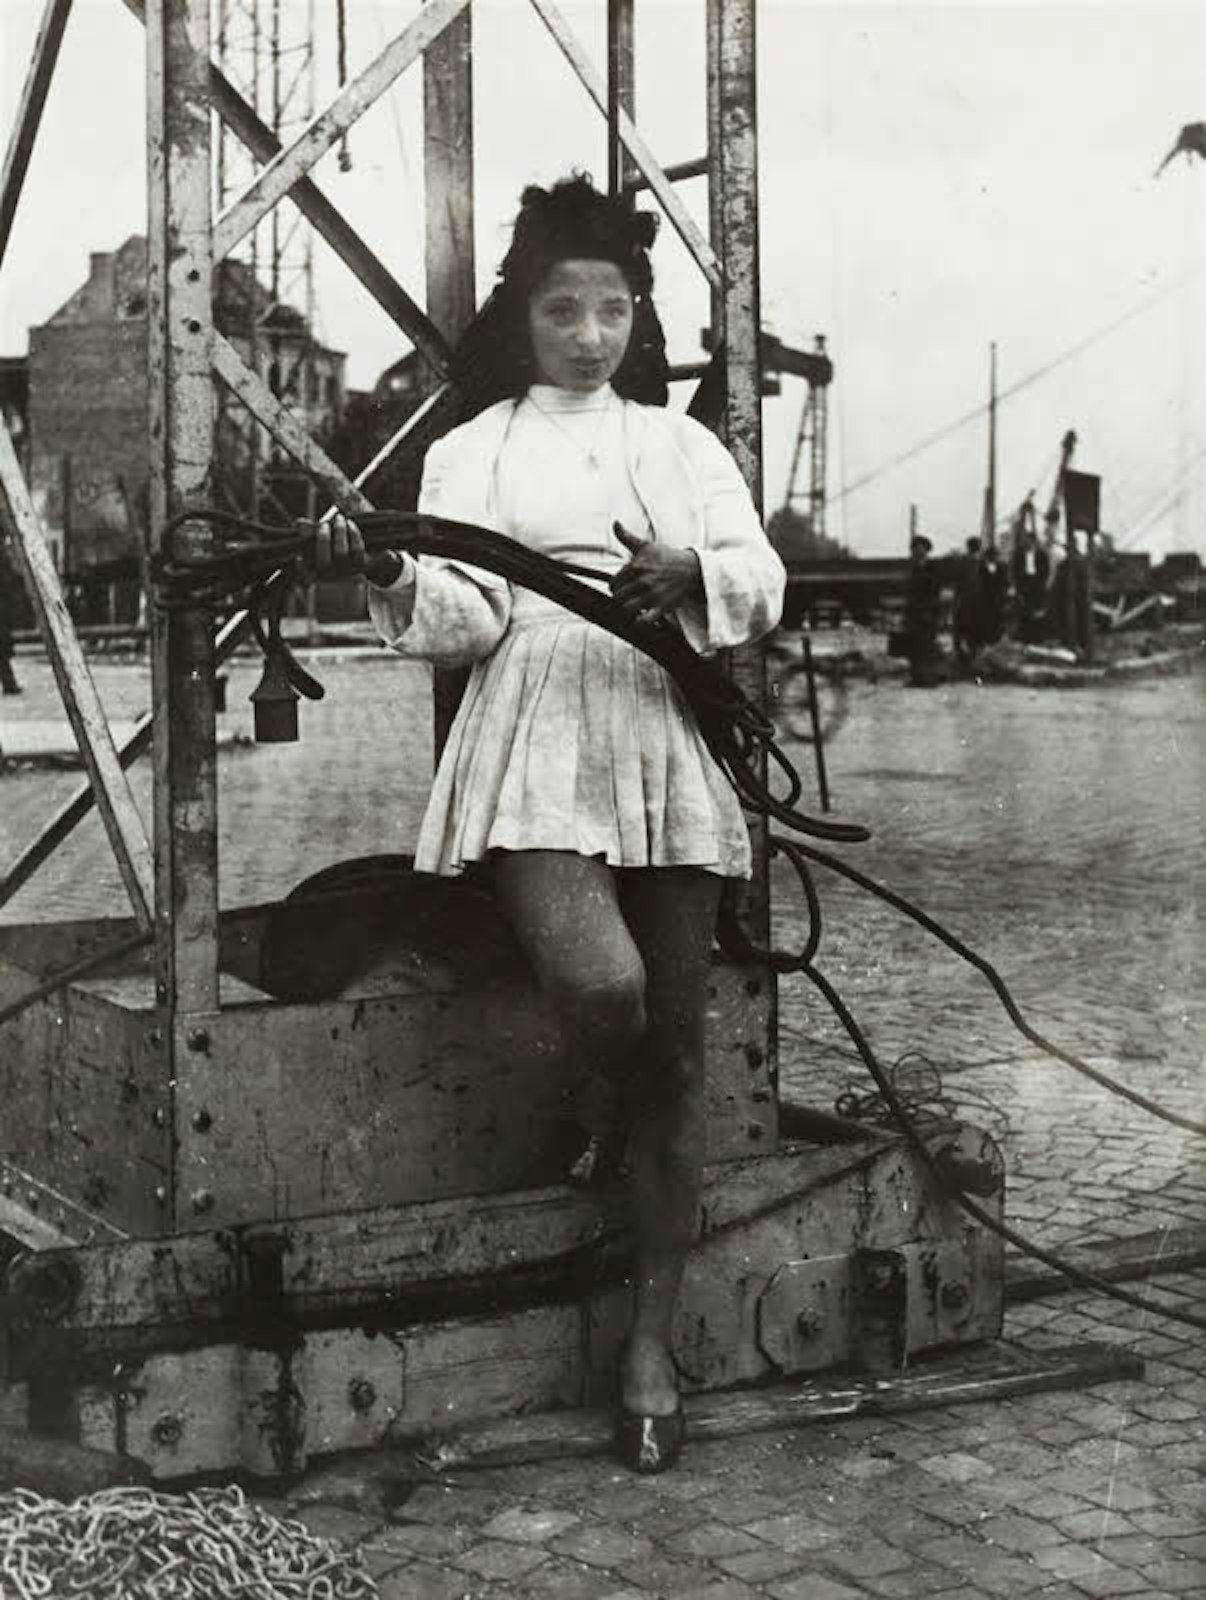 Seilartistin auf dem Heumarkt 1946